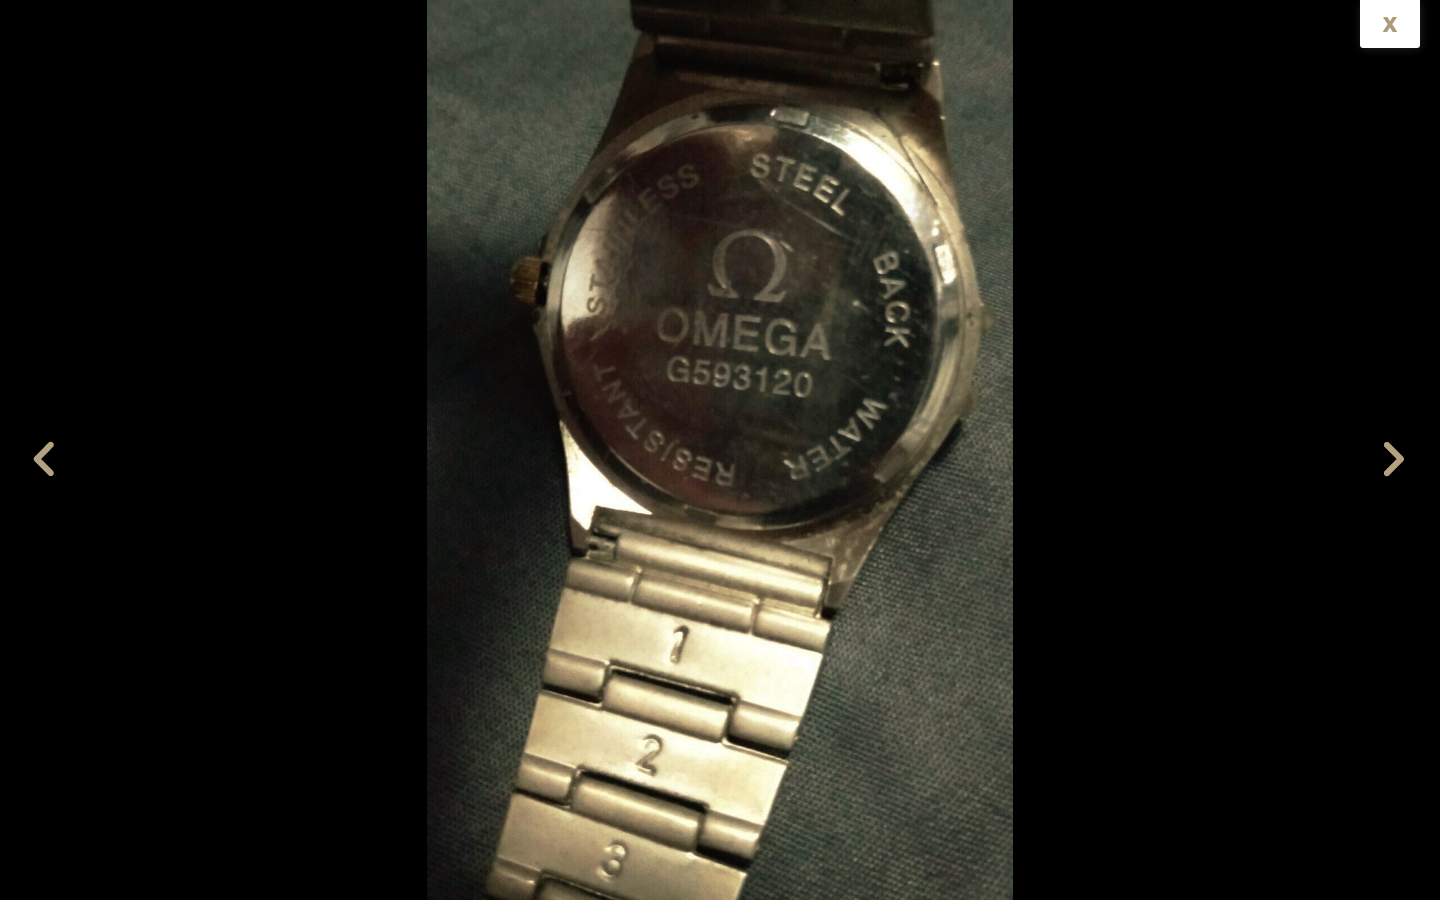 omega g593120